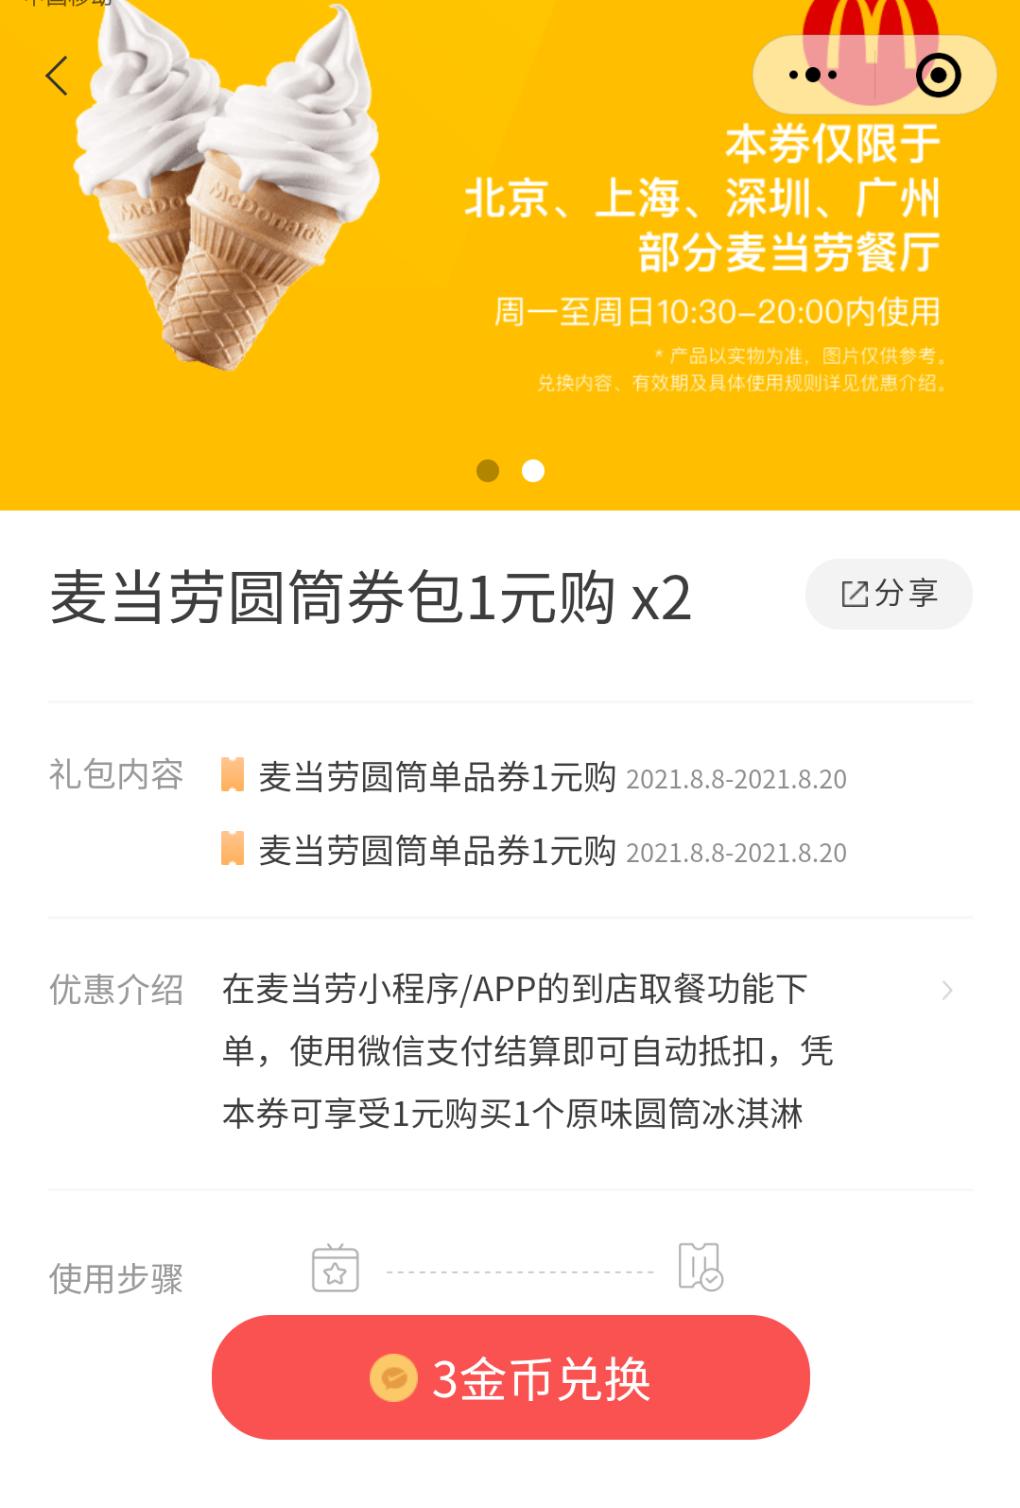 一元购麦当劳甜筒券-两张-惠小助(52huixz.com)